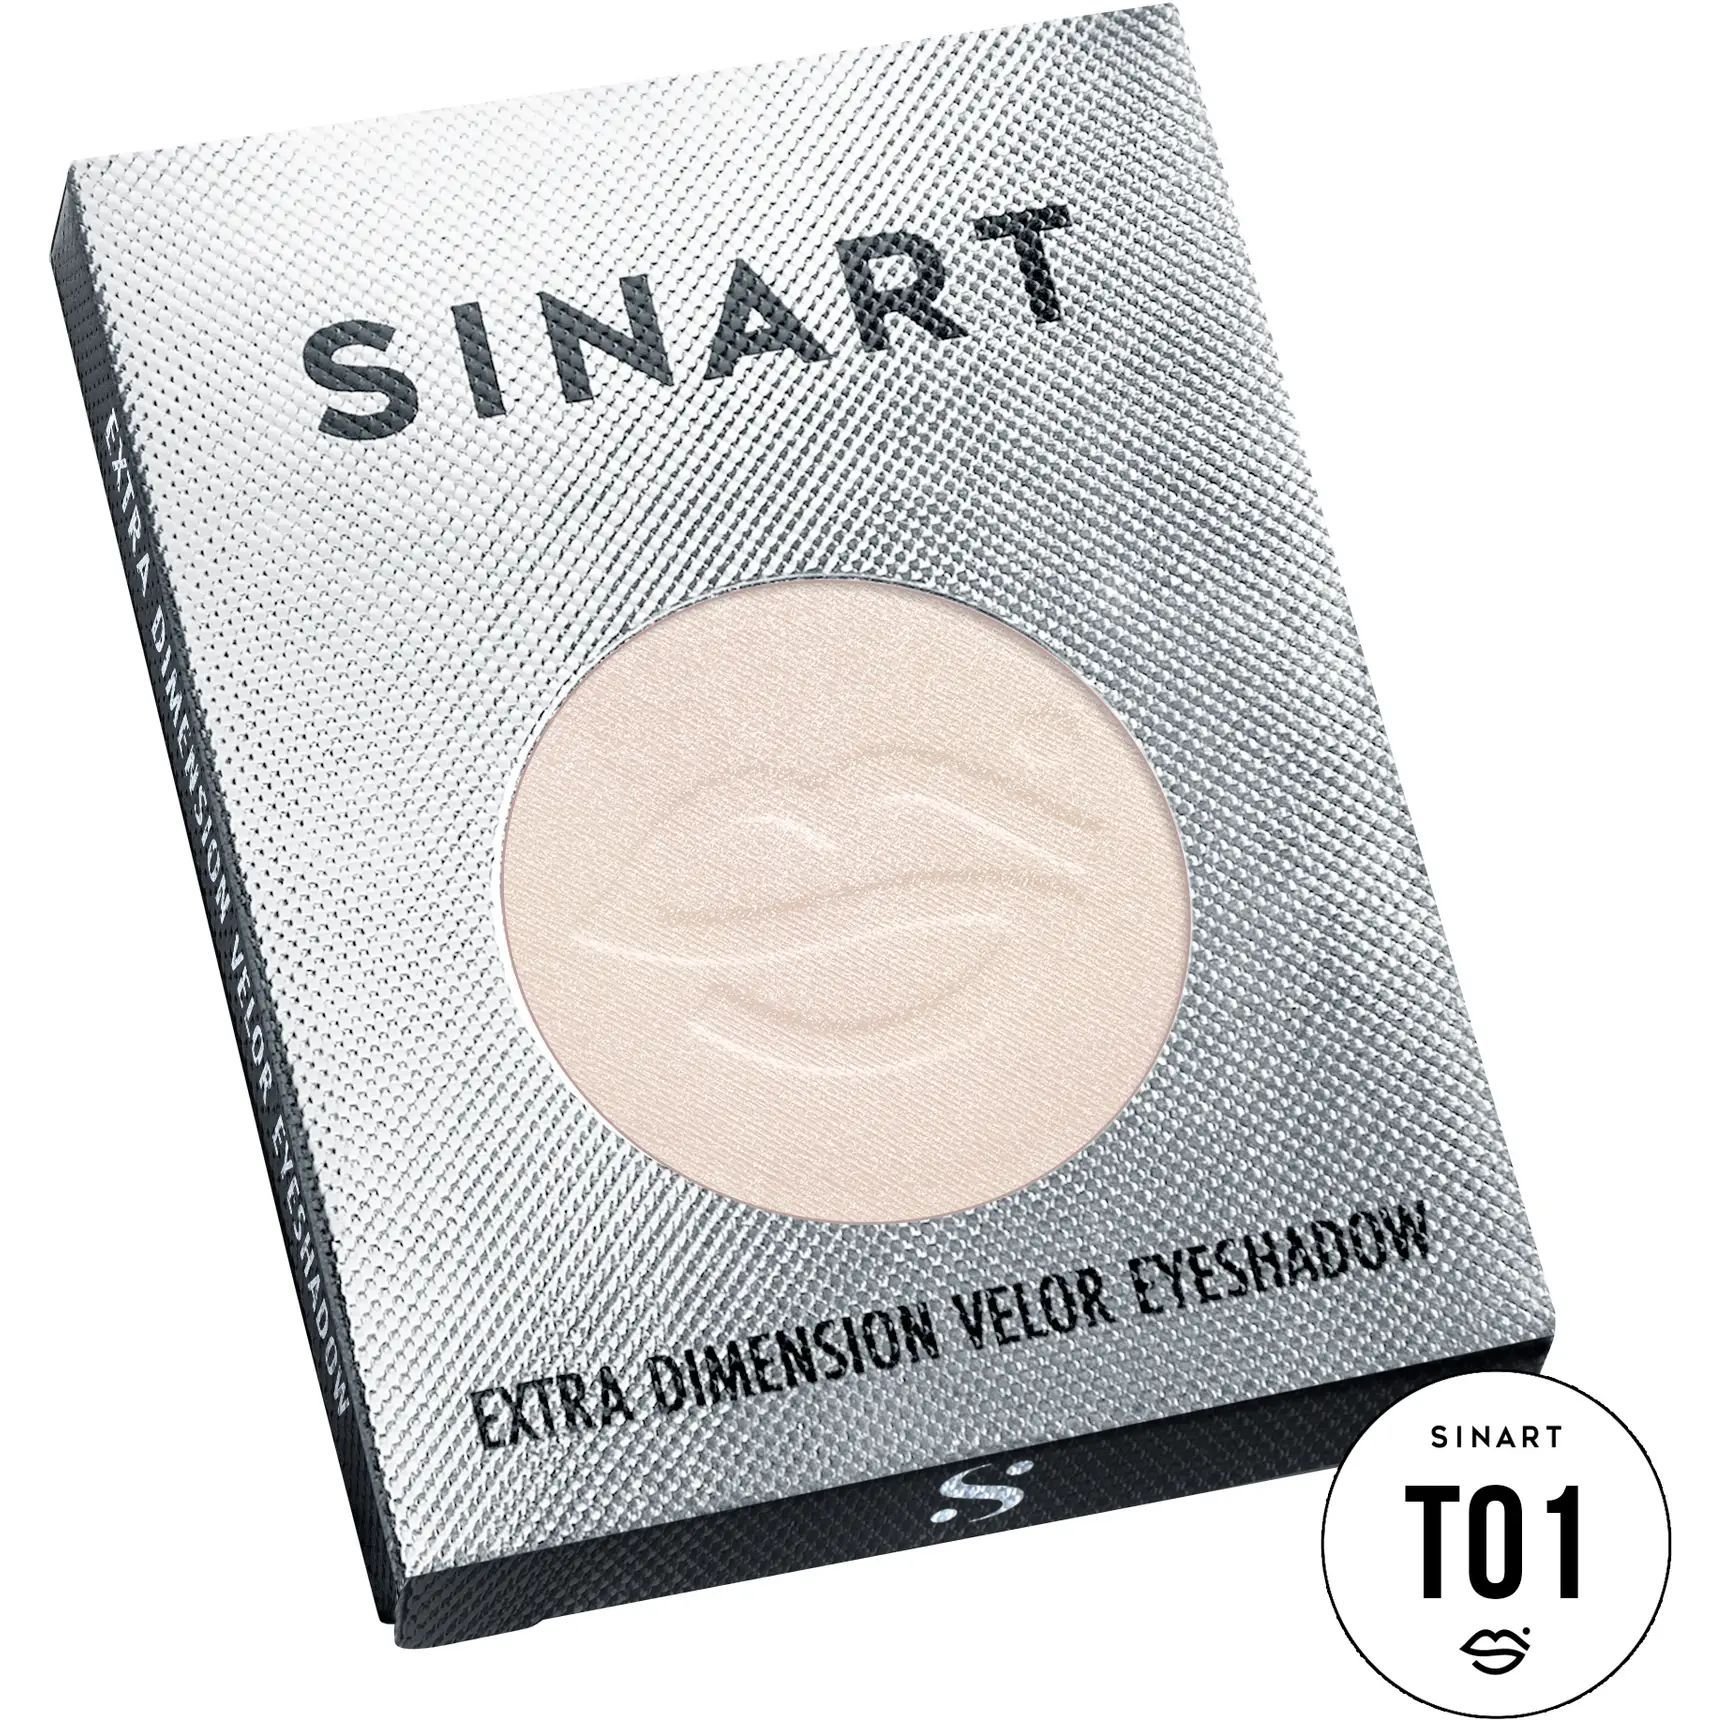 Прессованные тени для век Sinart T01 Extra Dimension Velor Eyeshadow - фото 3